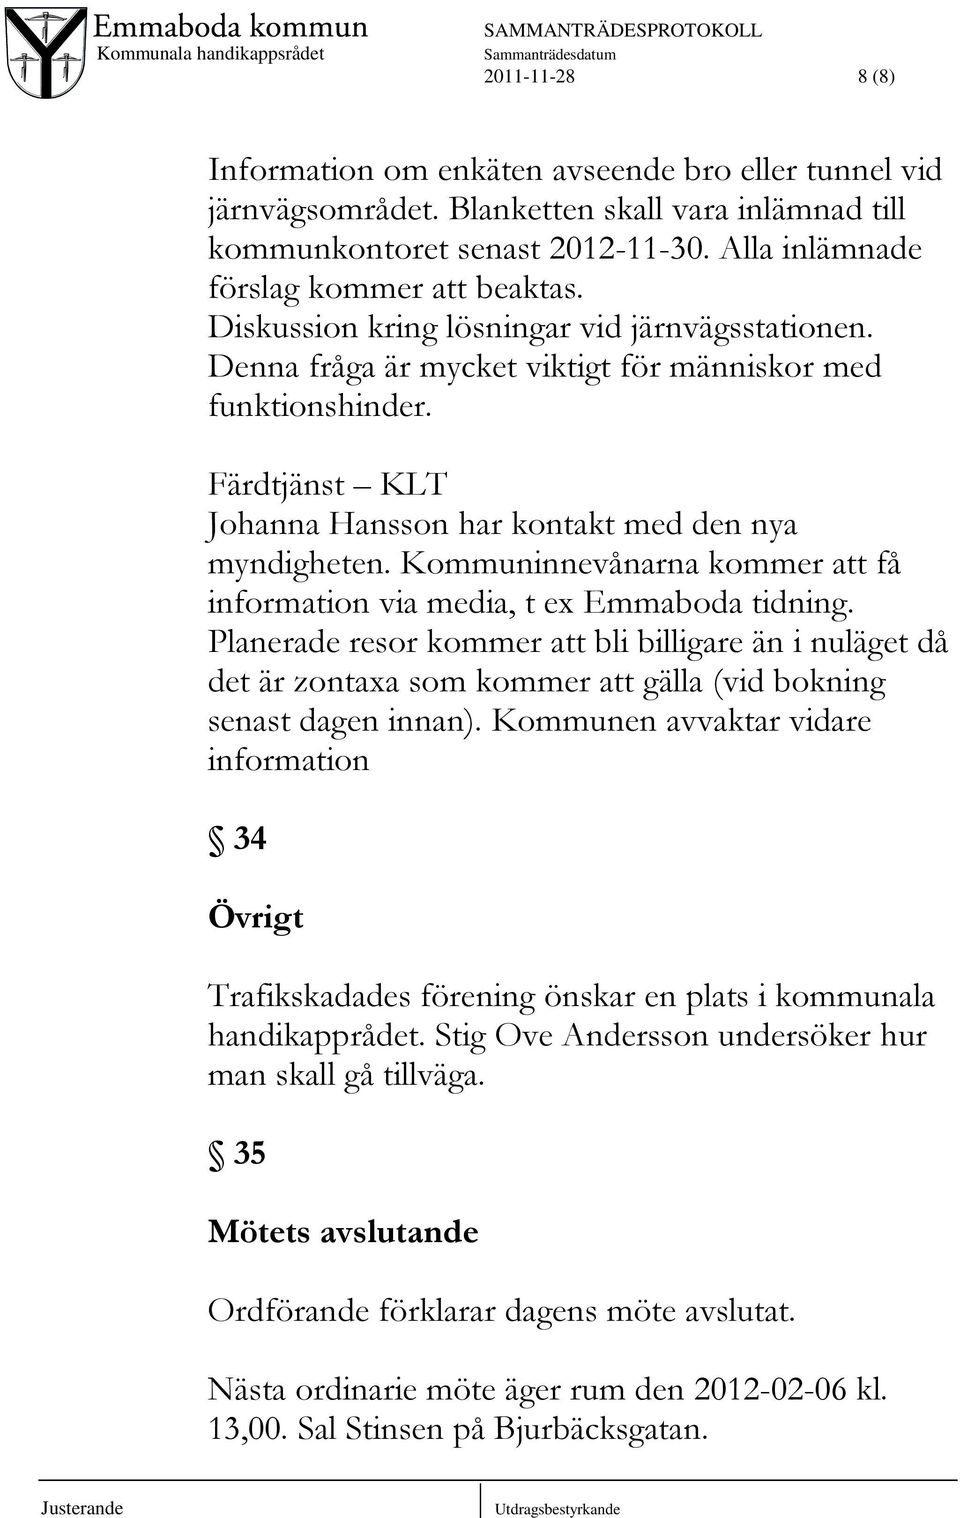 Kommuninnevånarna kommer att få information via media, t ex Emmaboda tidning.